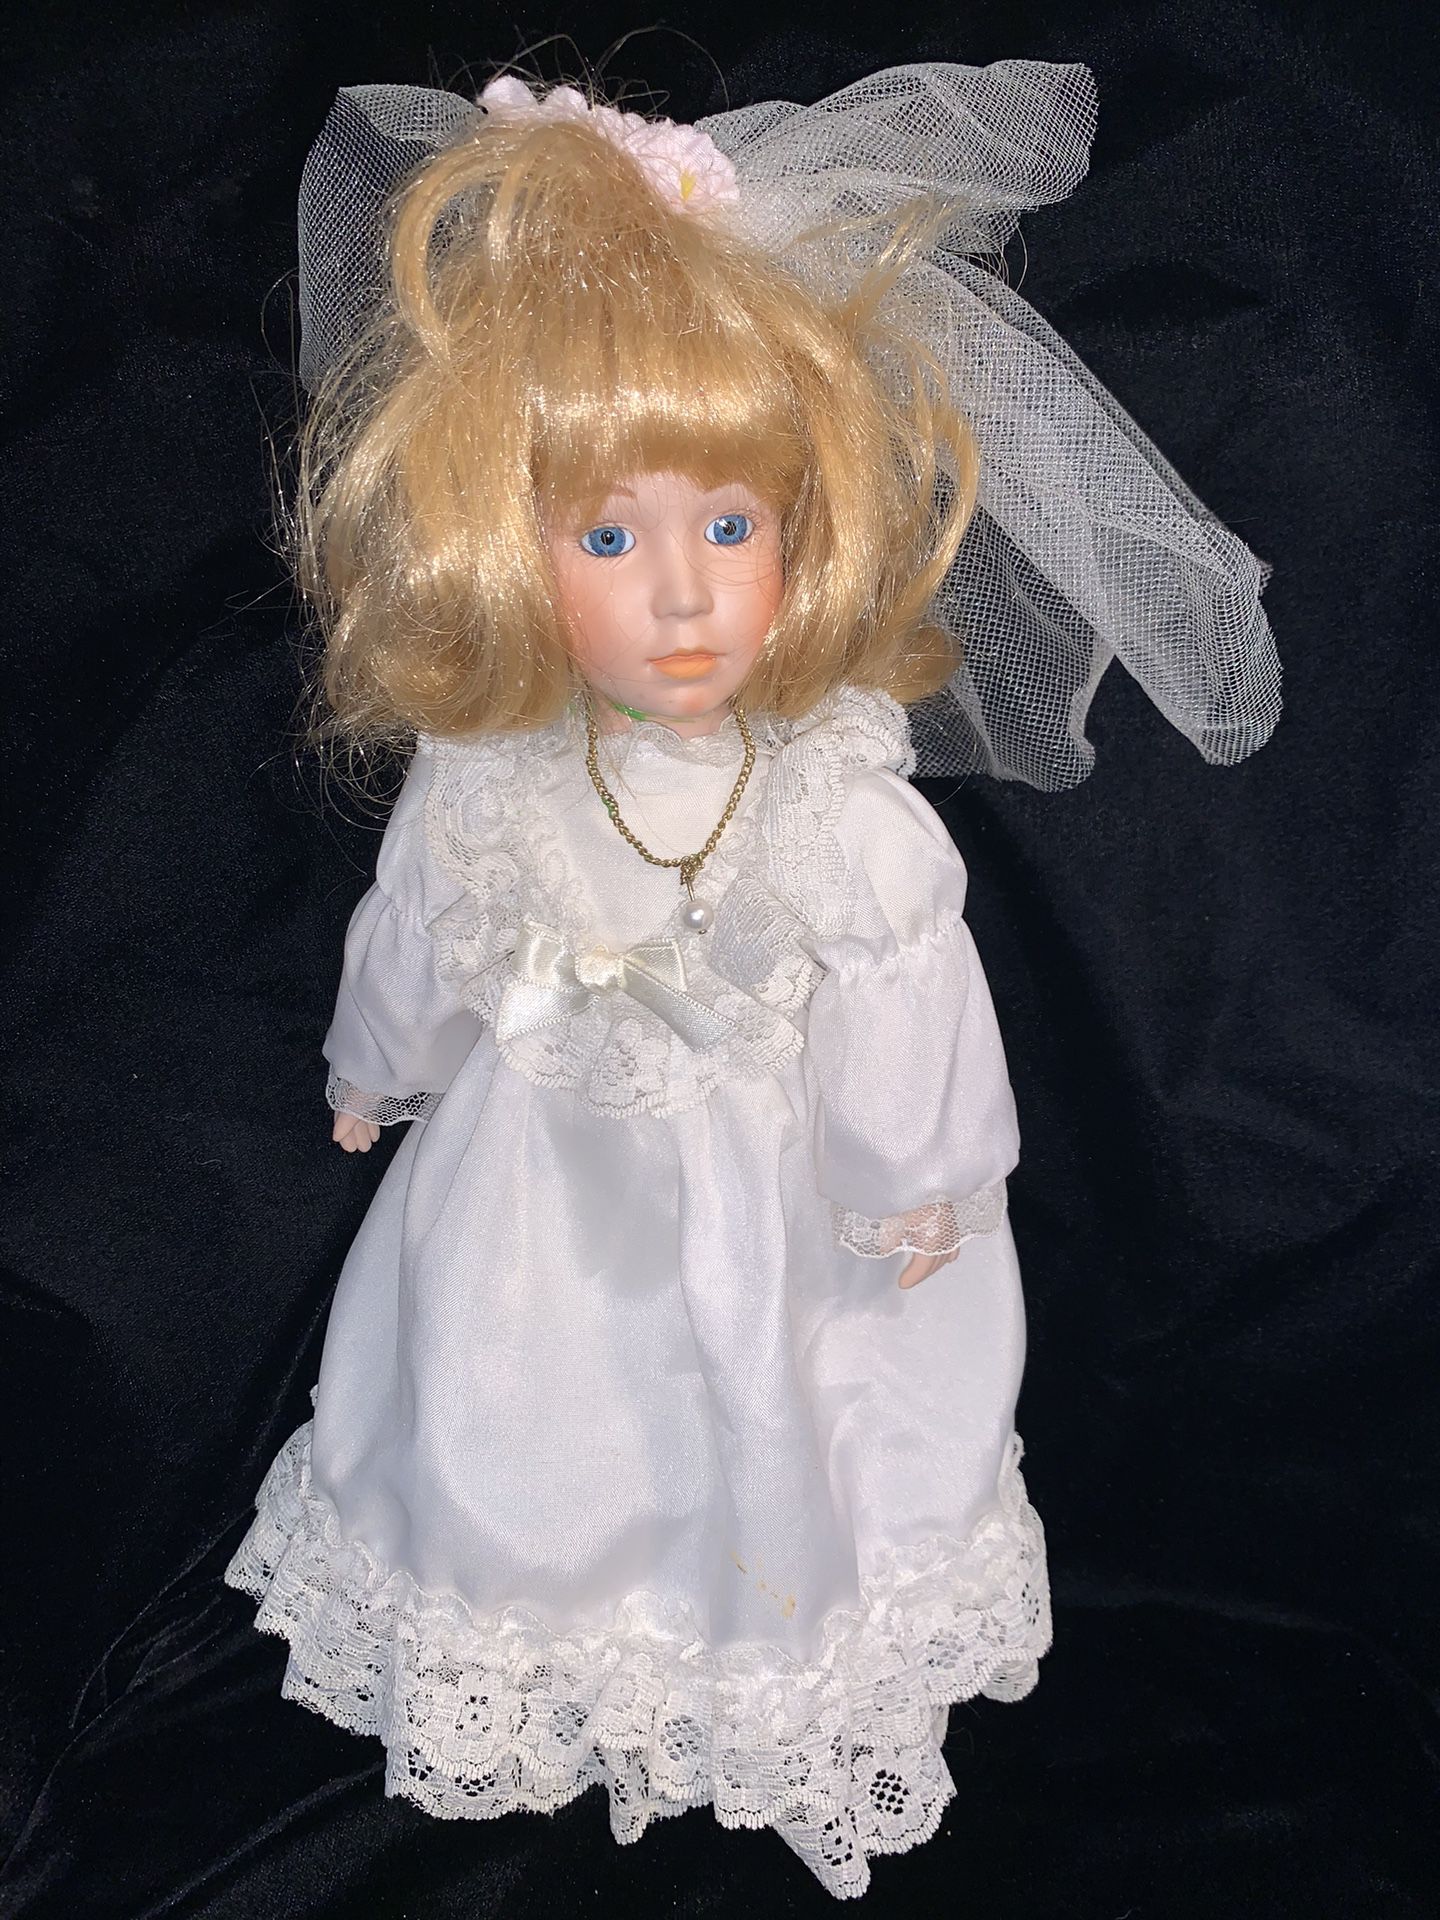 Brinn’s Limited Edition Bridal Doll